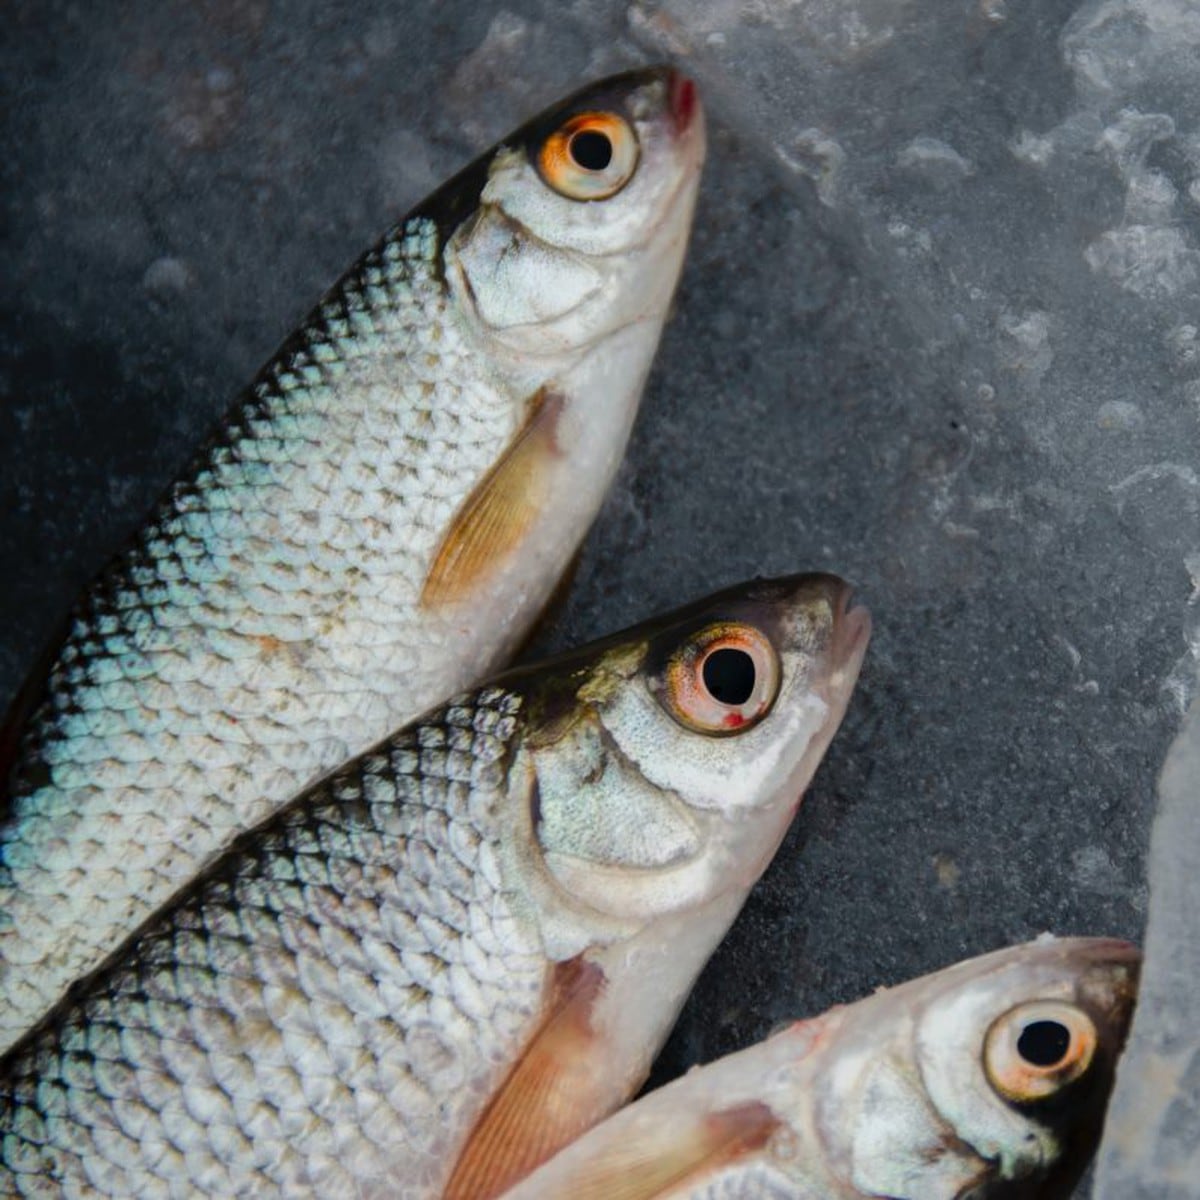 🐟​ 5 trucos para reconocer el pescado fresco 